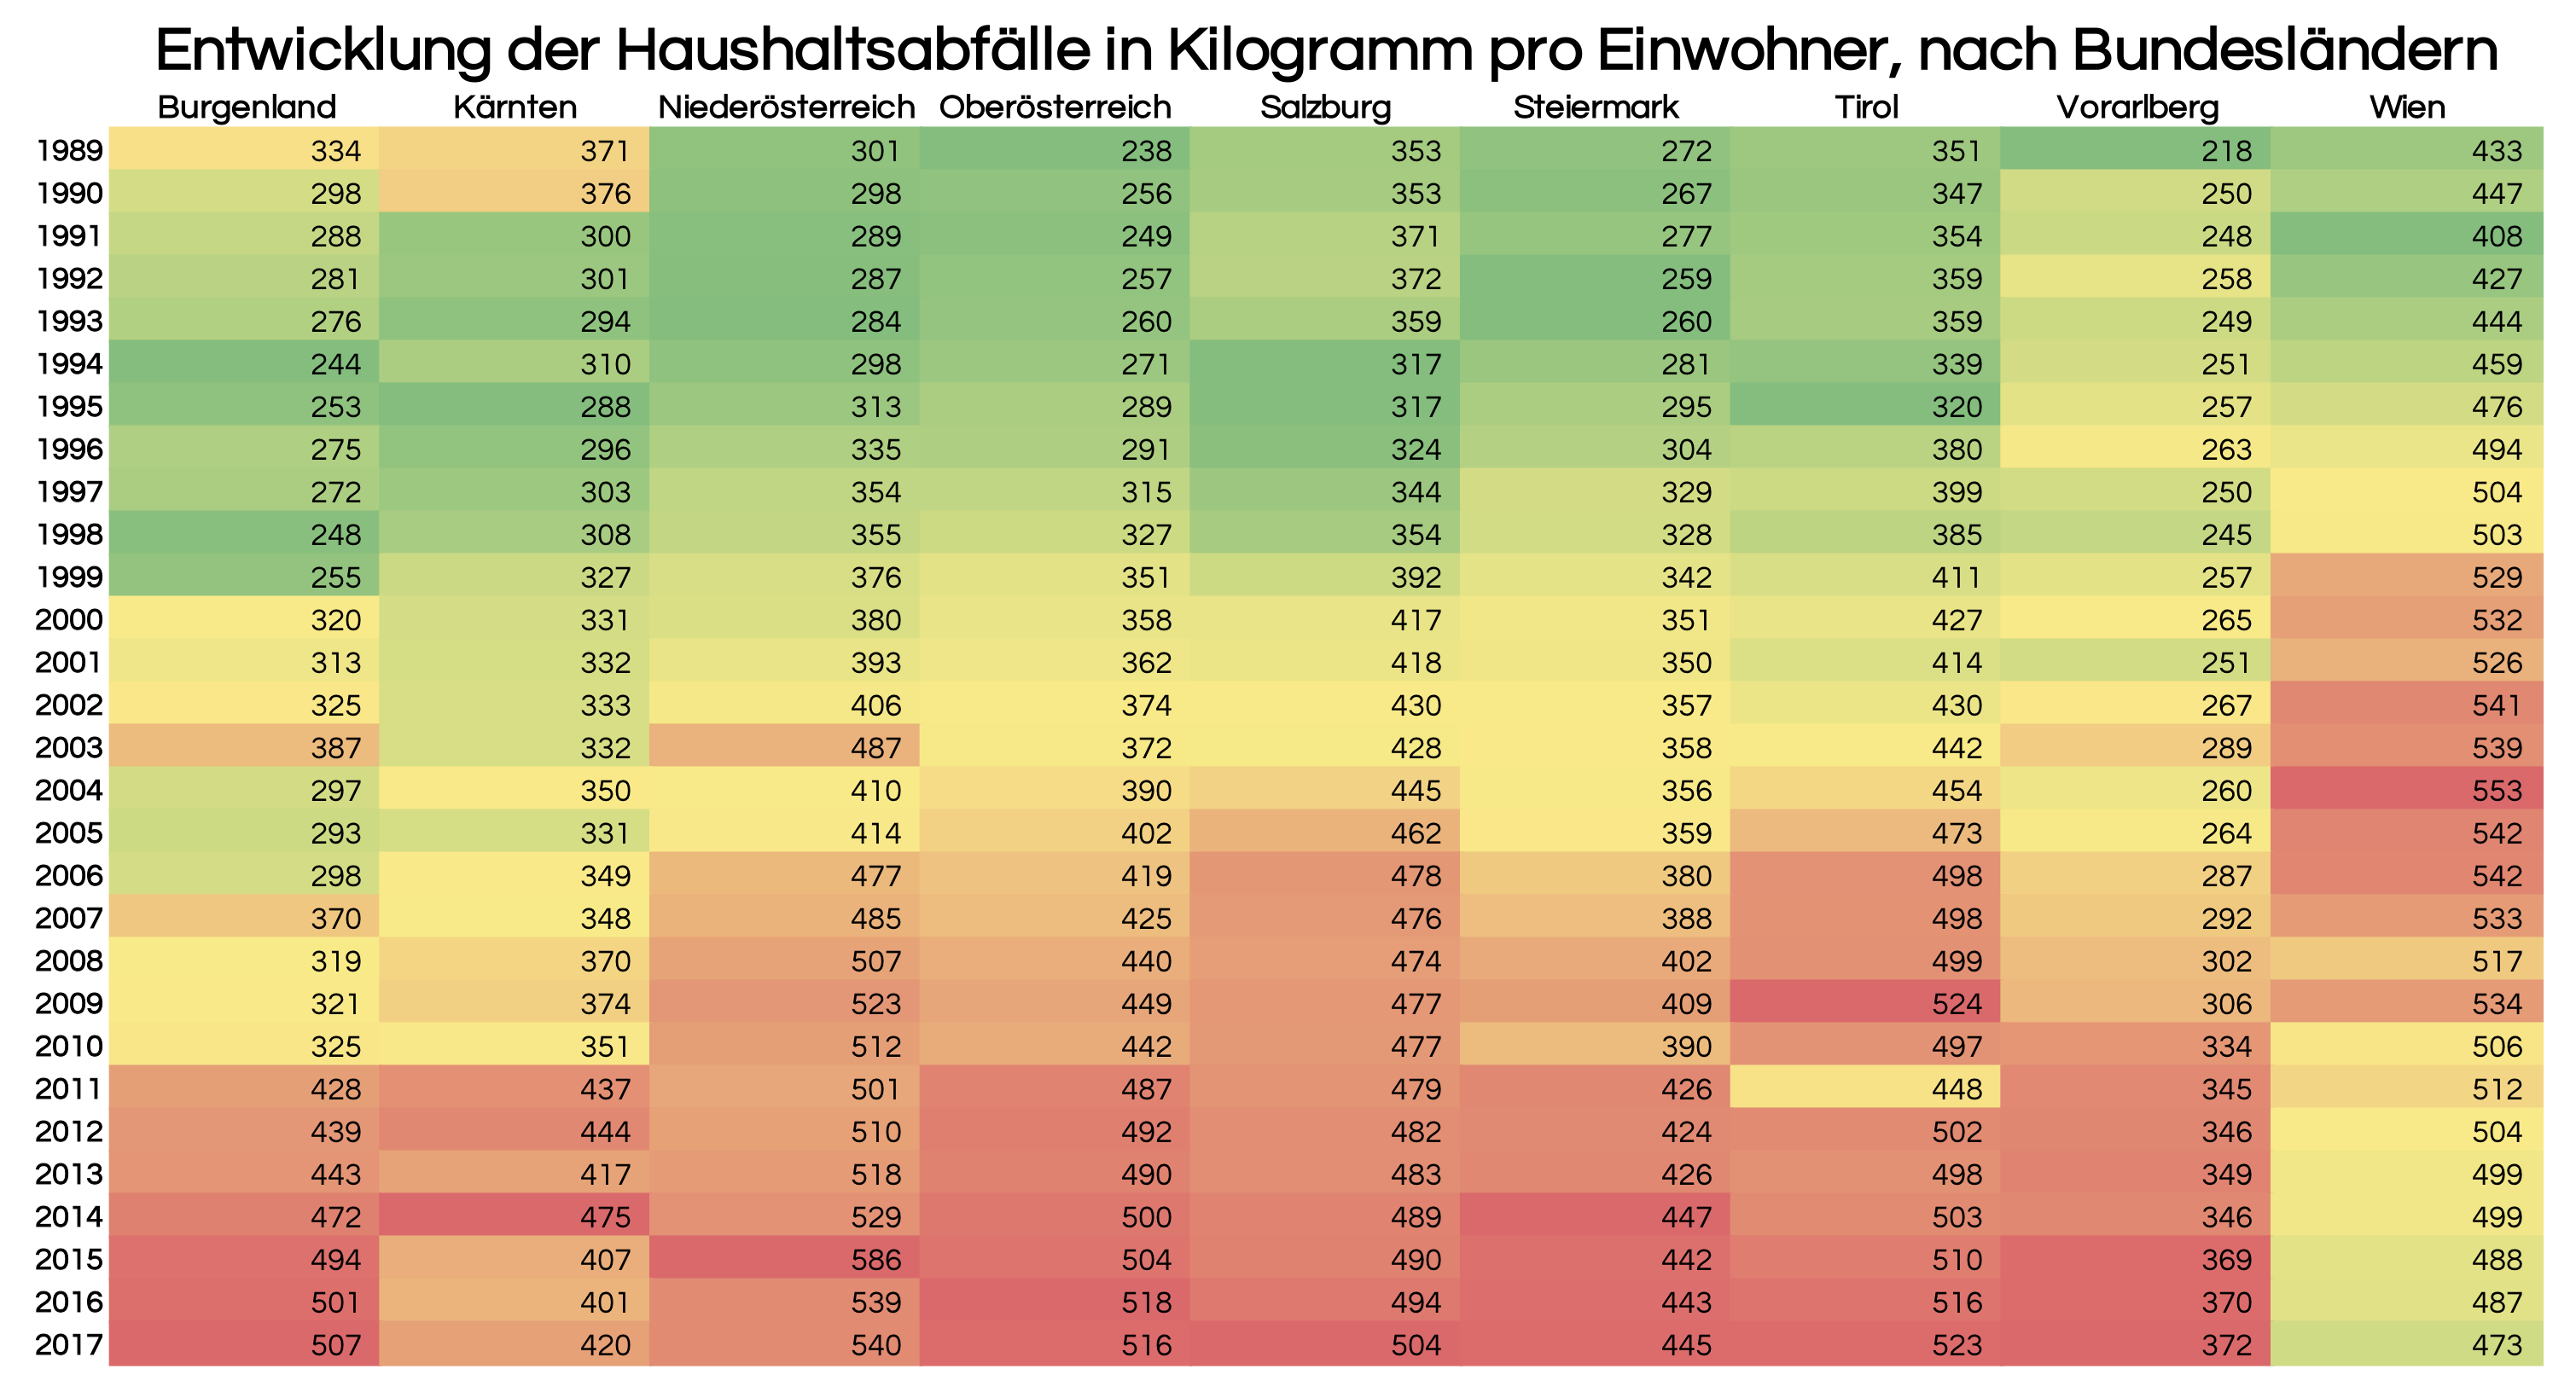 Entwicklung der Haushaltsabfälle in Kilogramm pro Einwohner nach Bundesländern